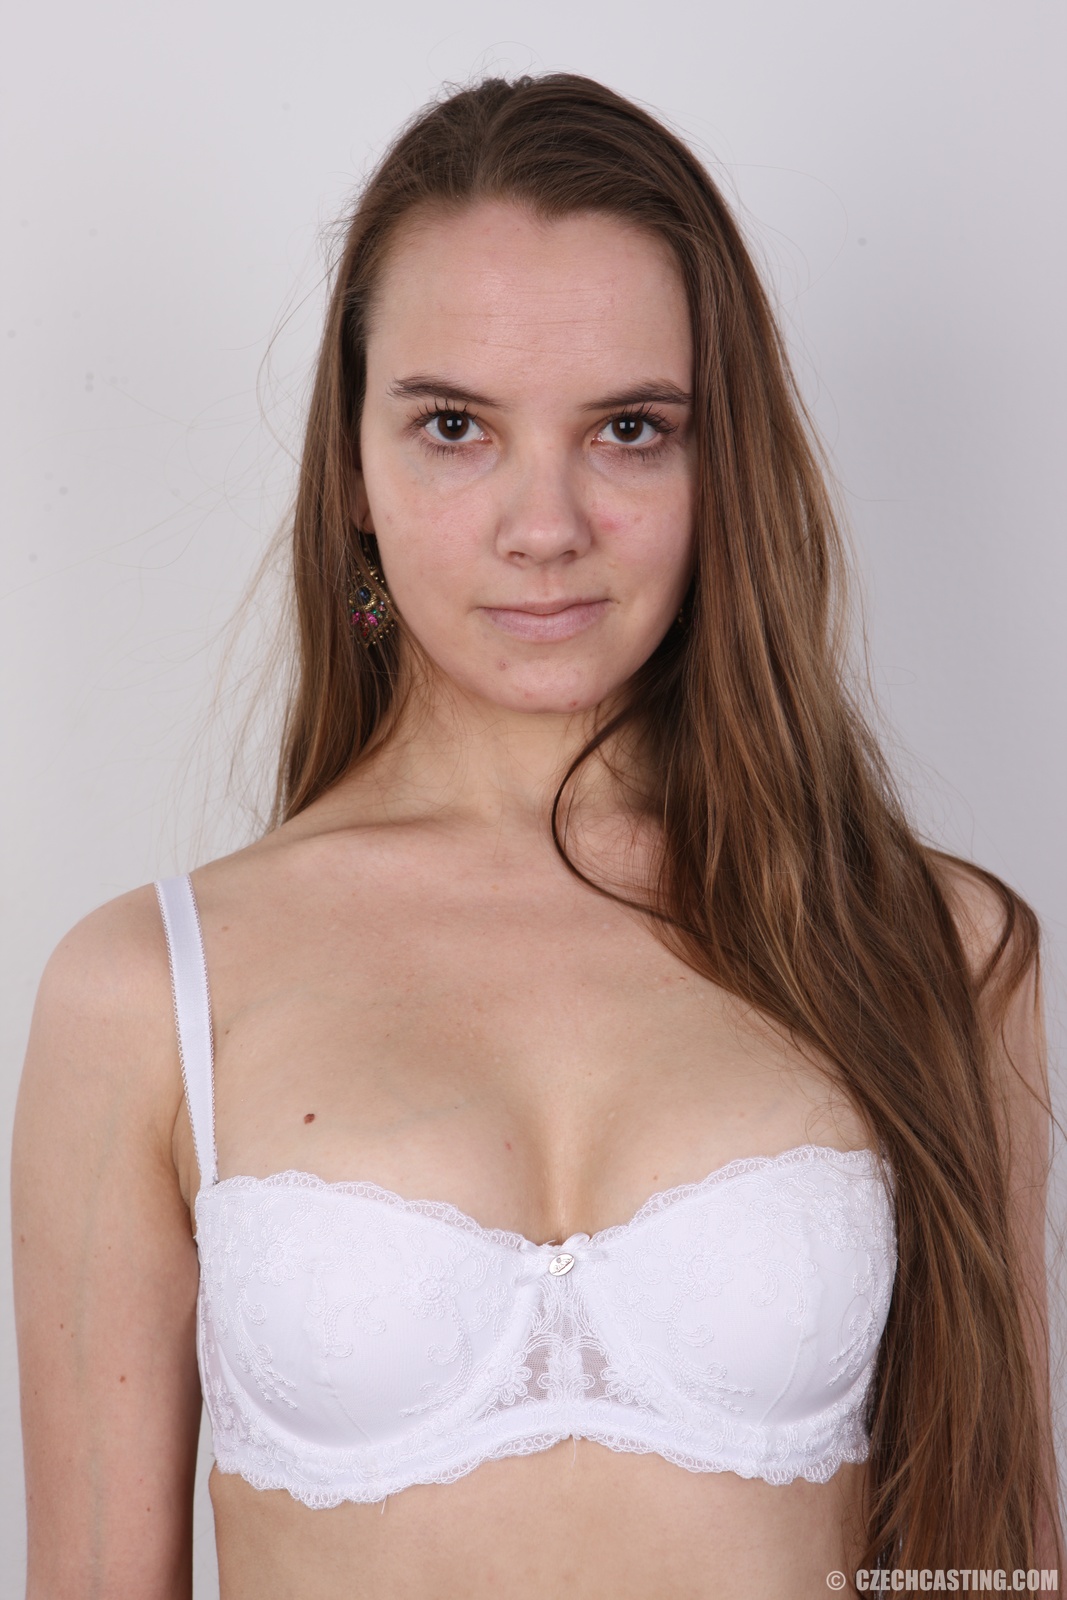 Adriana - Czech Casting.